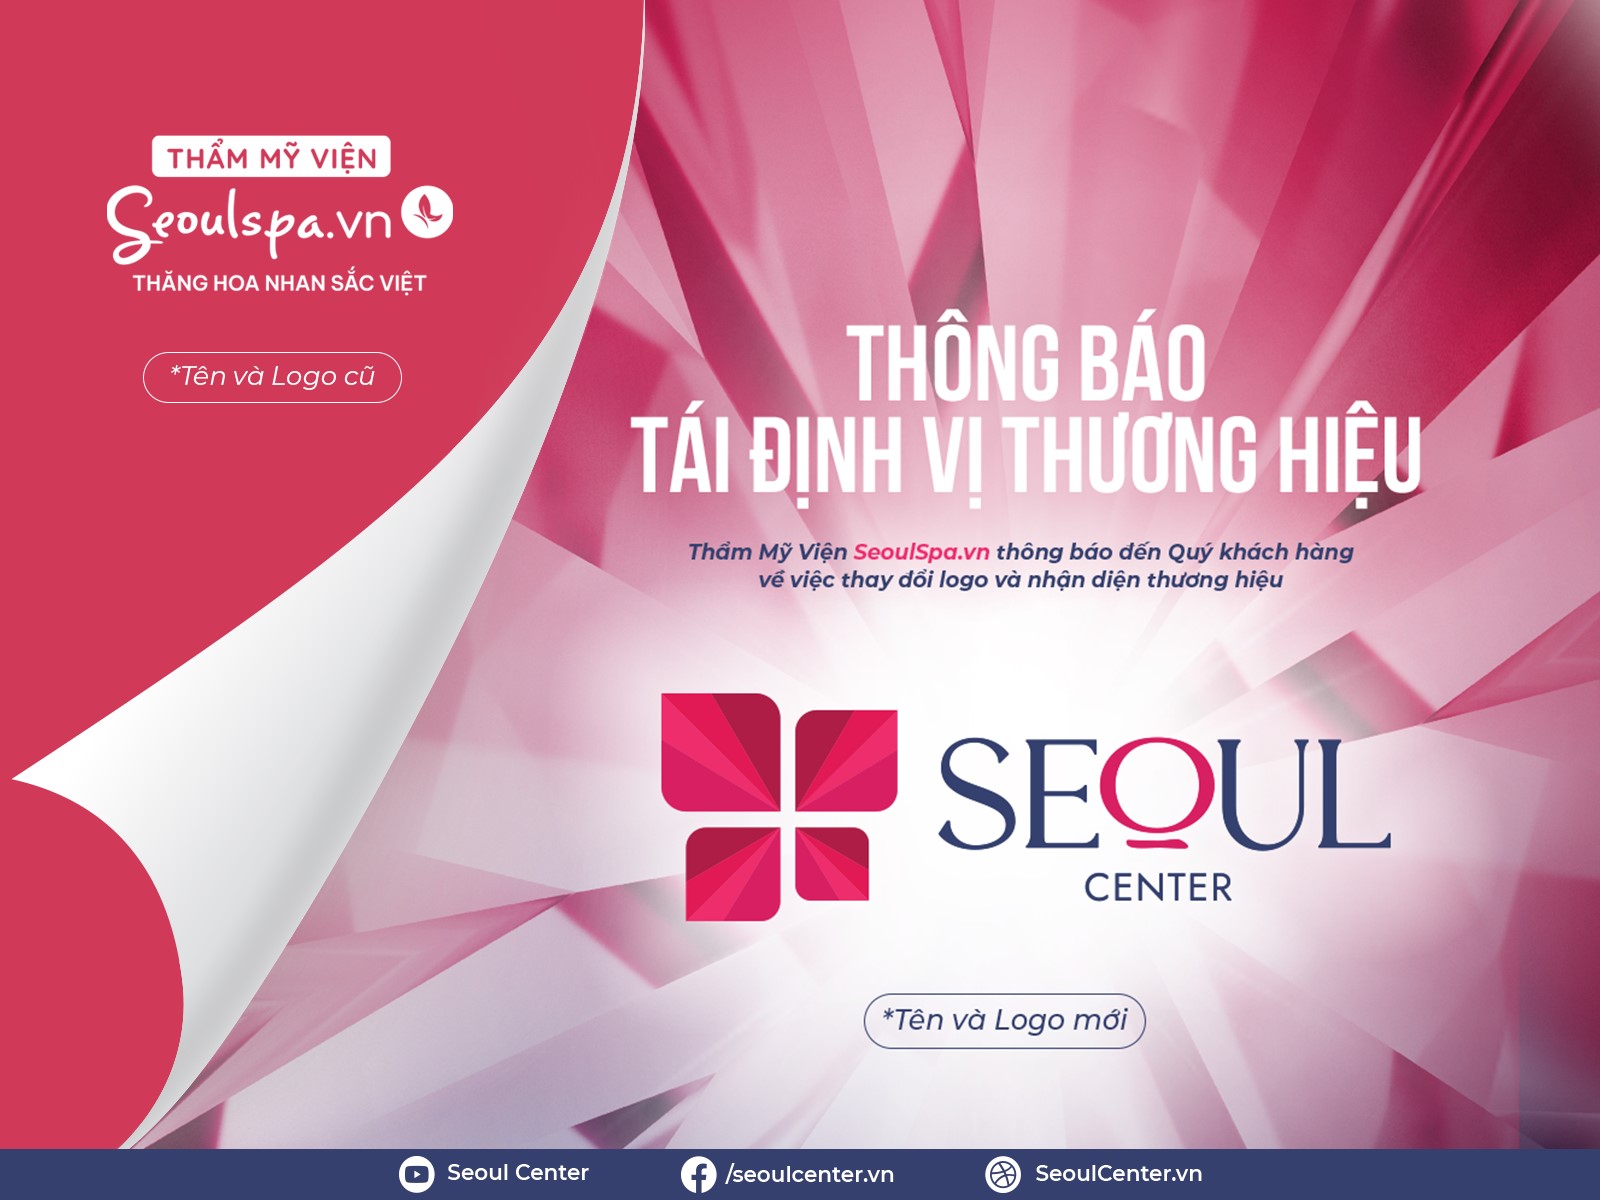 Thẩm mỹ viện SeoulSpa.Vn tại Vũng Tàu và Dĩ An tái định vị thương hiệu thành Thẩm mỹ viện Seoul Center